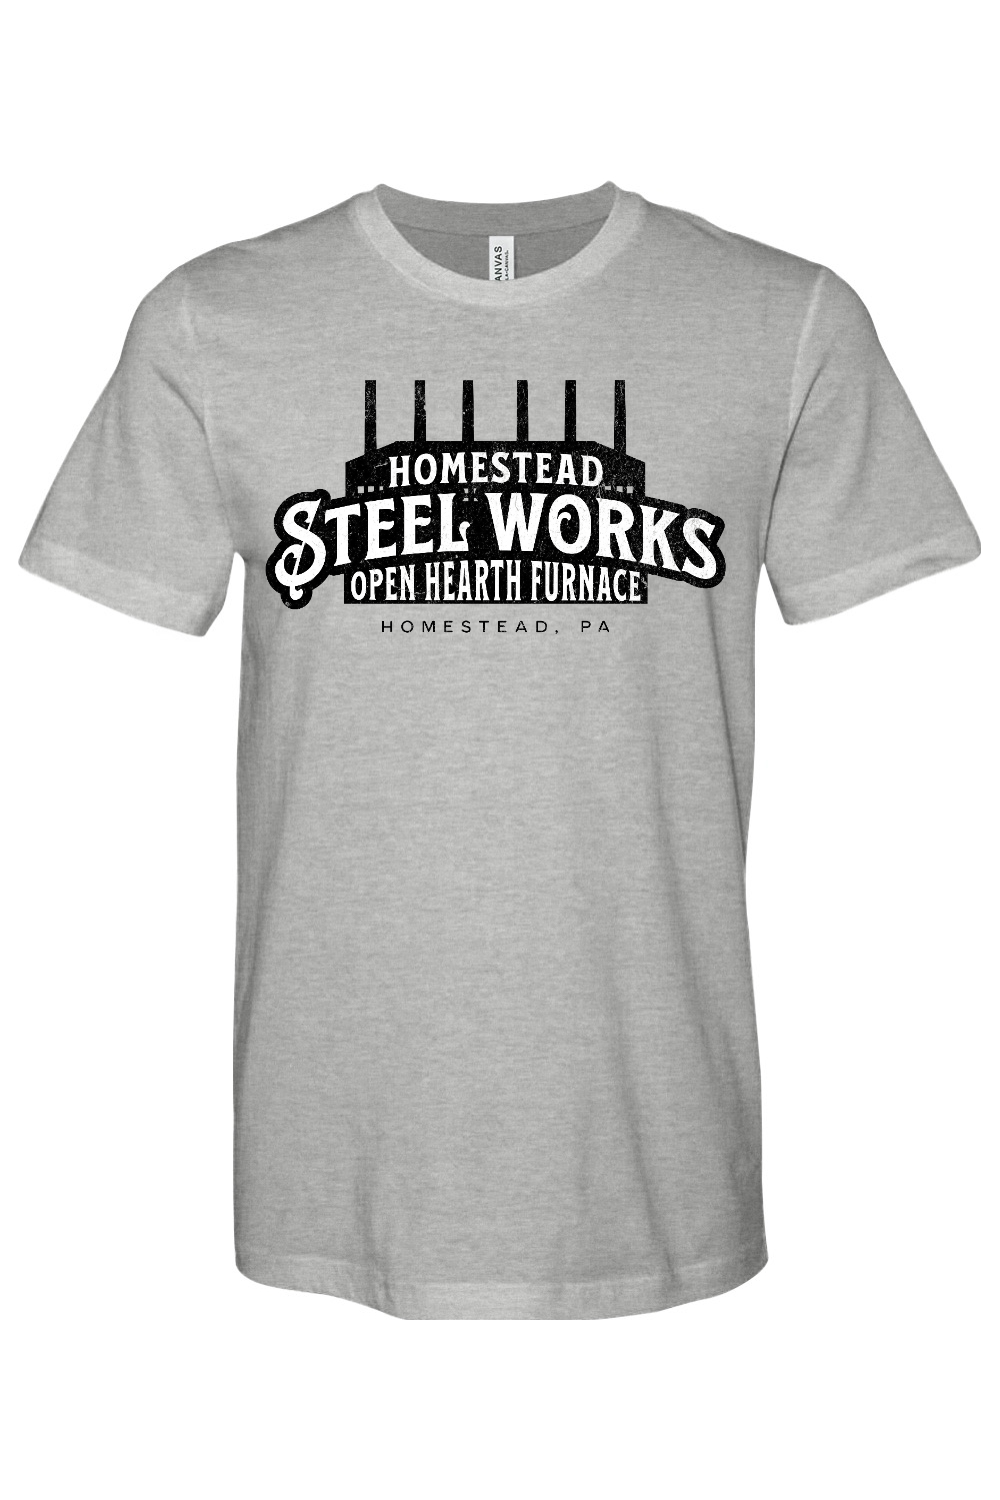 Homestead Steel Works - Open Heart Furnace - Homestead, PA - Yinzylvania